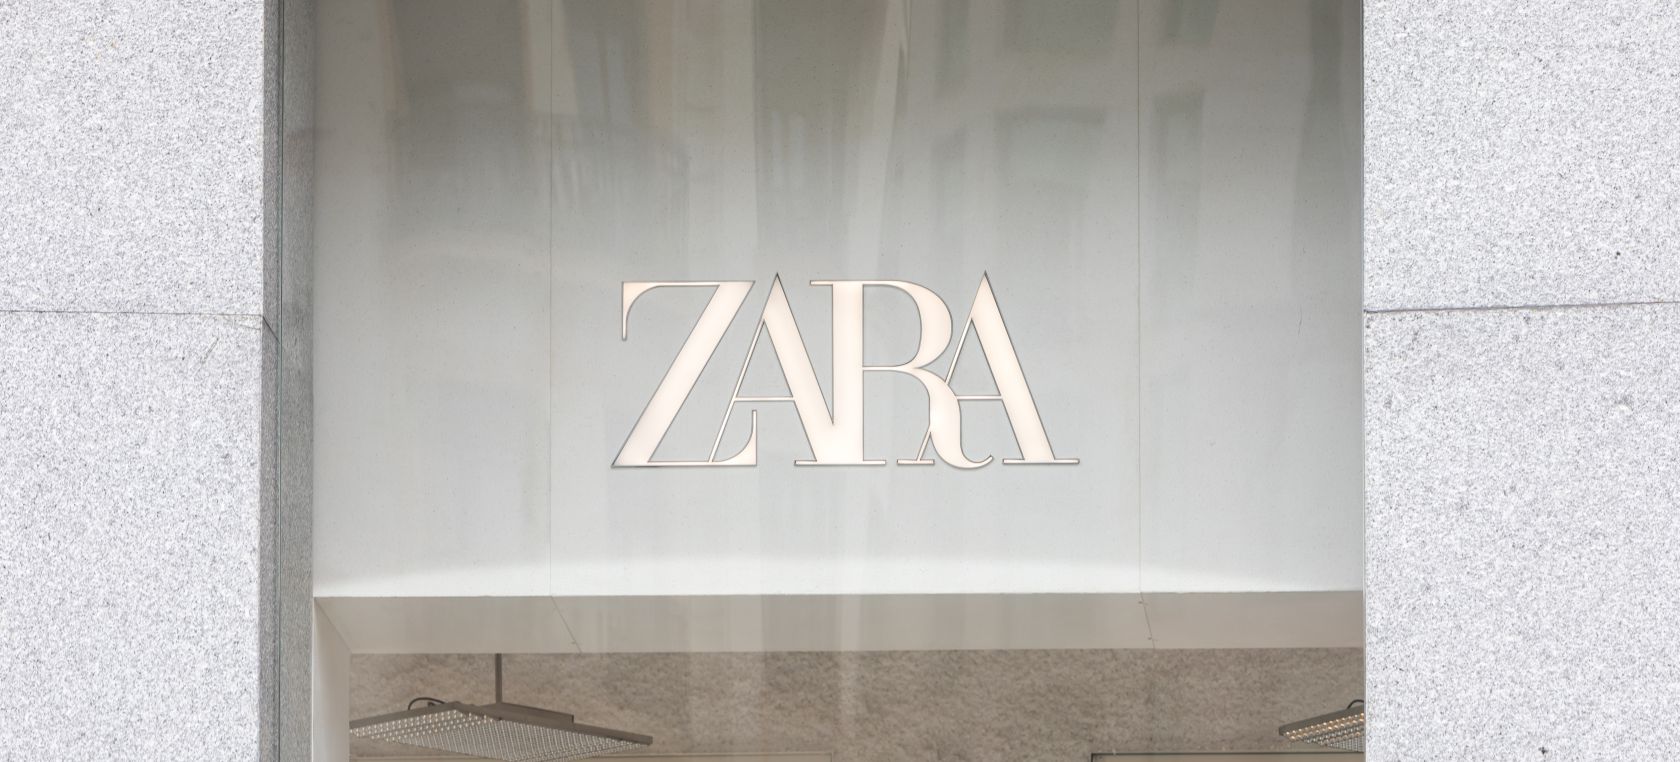 Zara venderá ropa de segunda mano a través de su propia plataforma: así funcionará